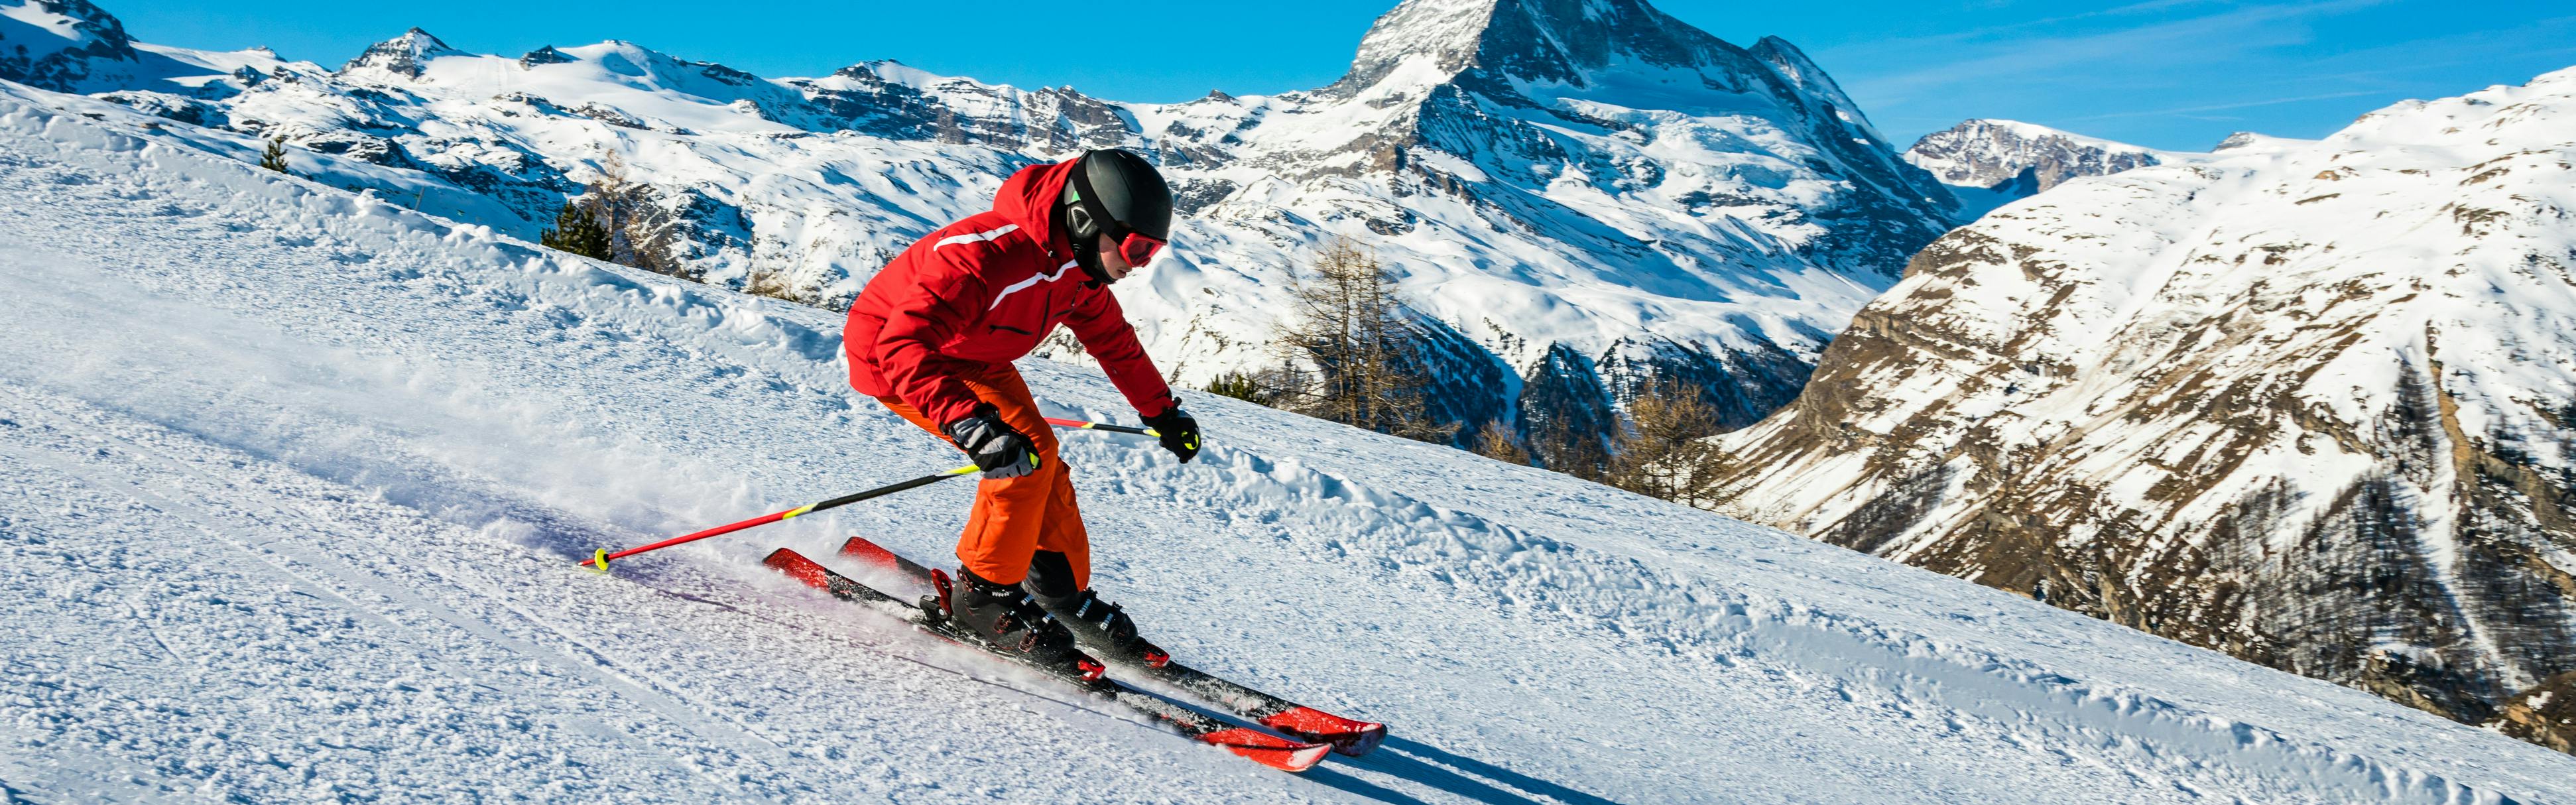 ingewikkeld impliceren Reparatie mogelijk How to Tune Your Skis at Home | Curated.com